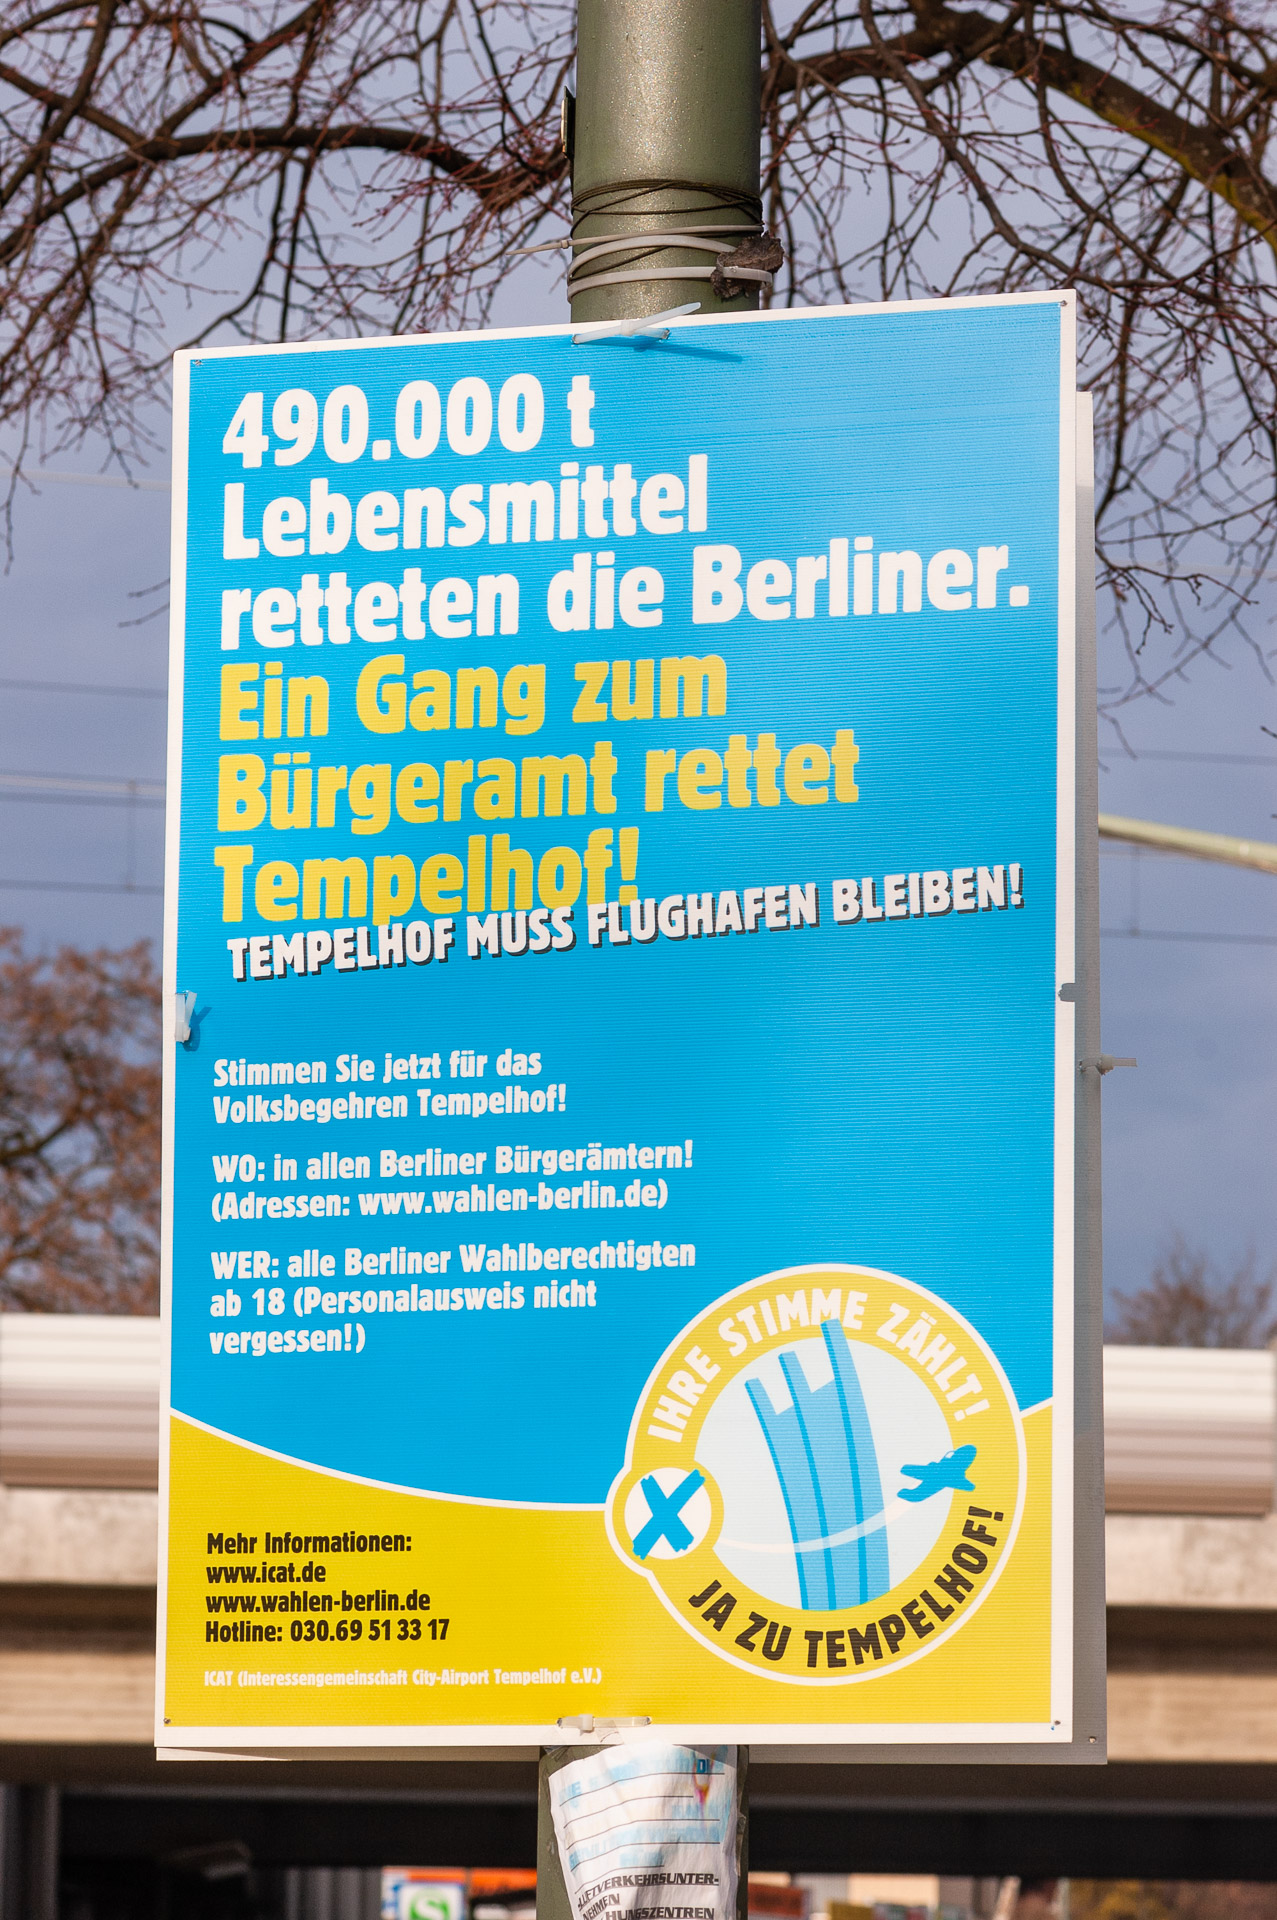 © Martin Frech: Werbeplakat für Volksbegehren, Leonorenstraße, Berlin-LankwitzNikon D70 (ACR)